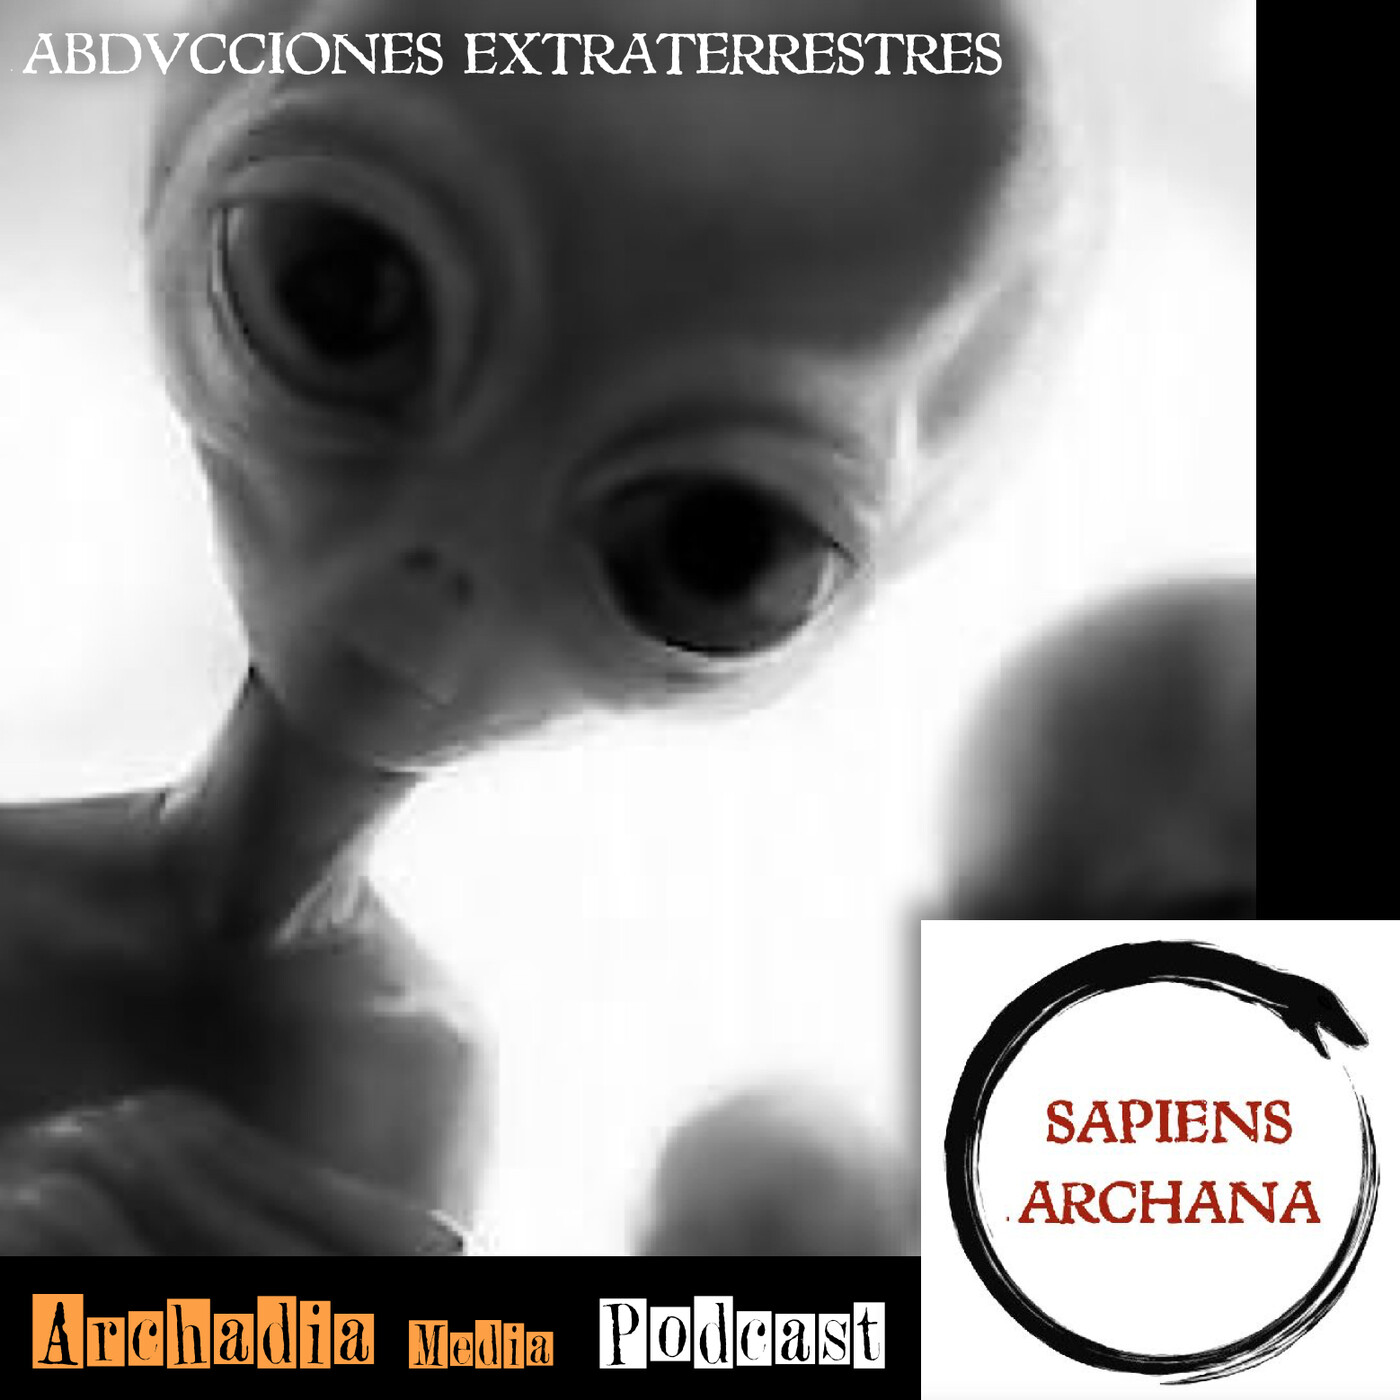 24 | Abducciones Extraterrestres